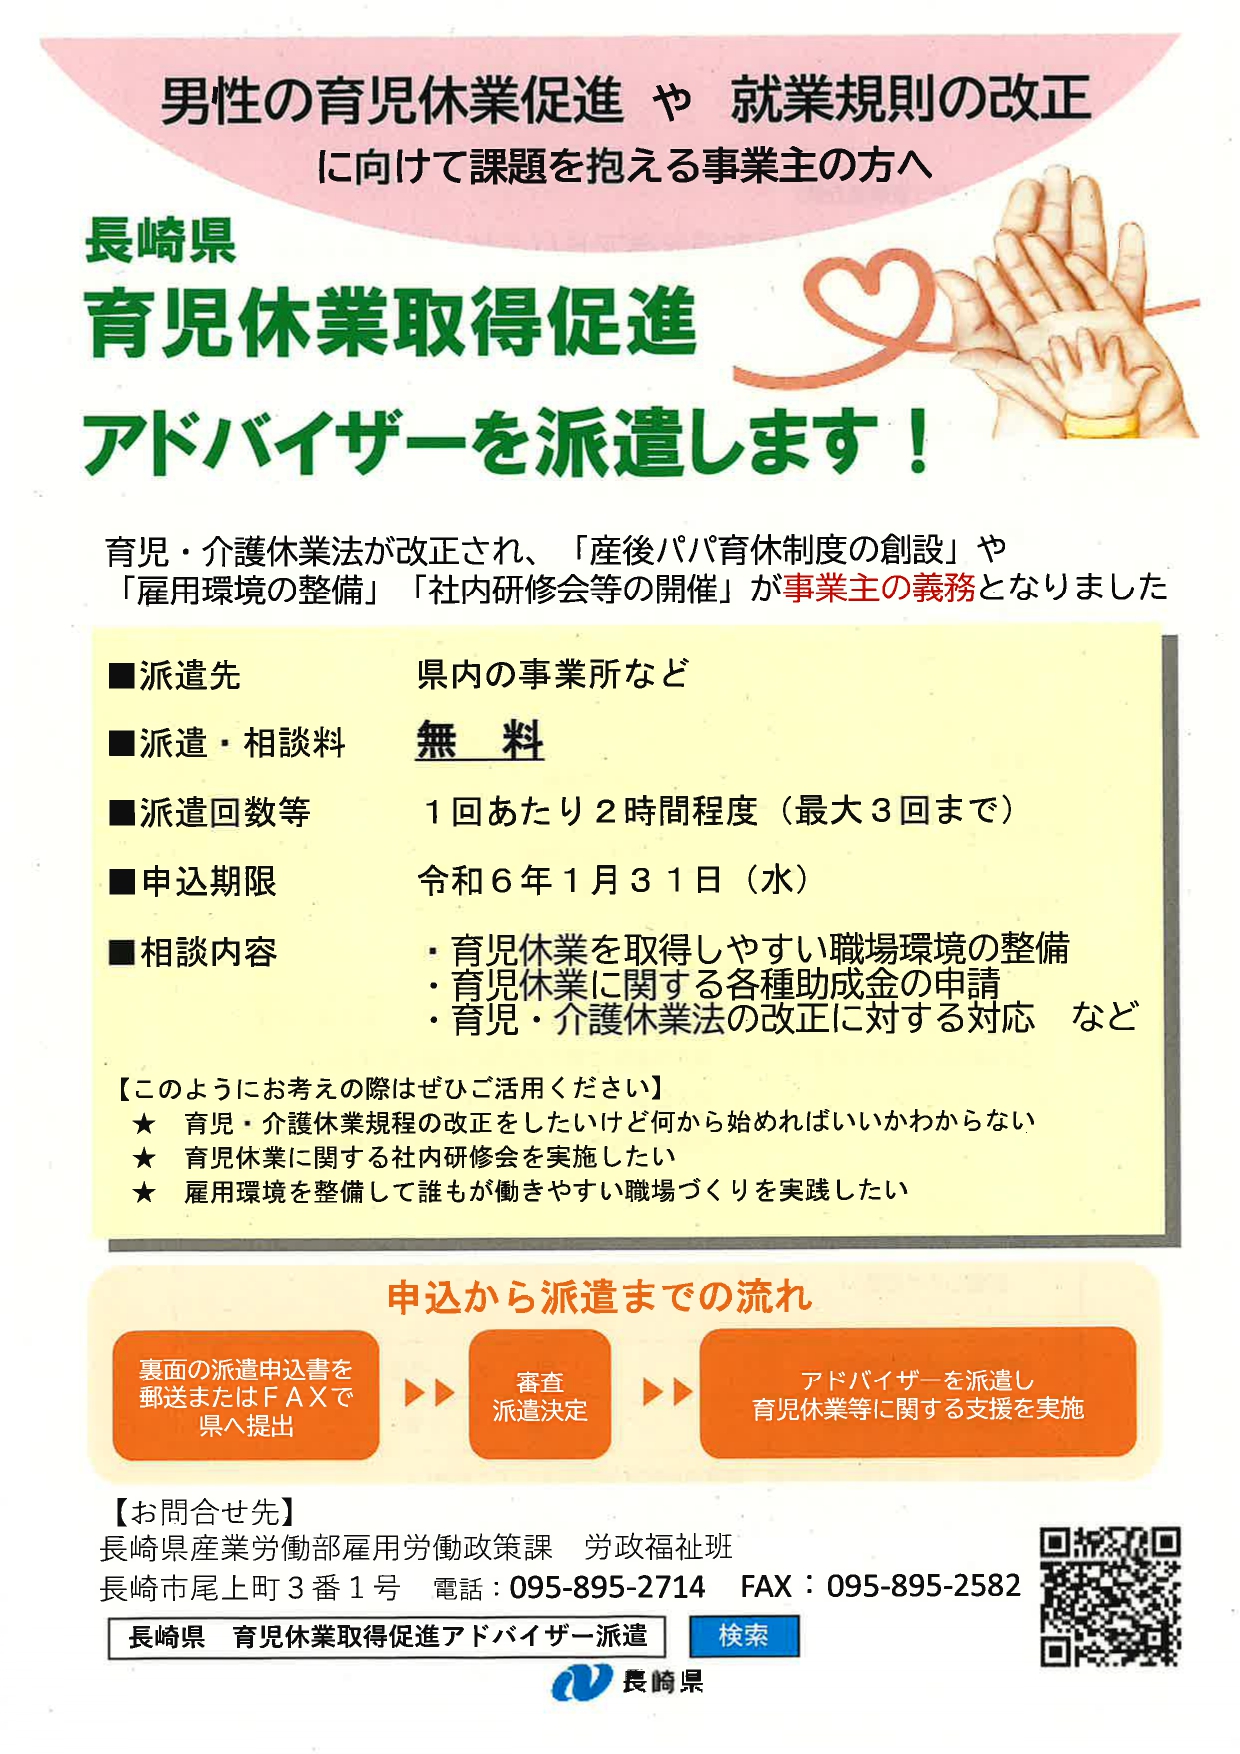 『長崎県育児休業取得促進アドバイザー派遣』に関するお知らせ